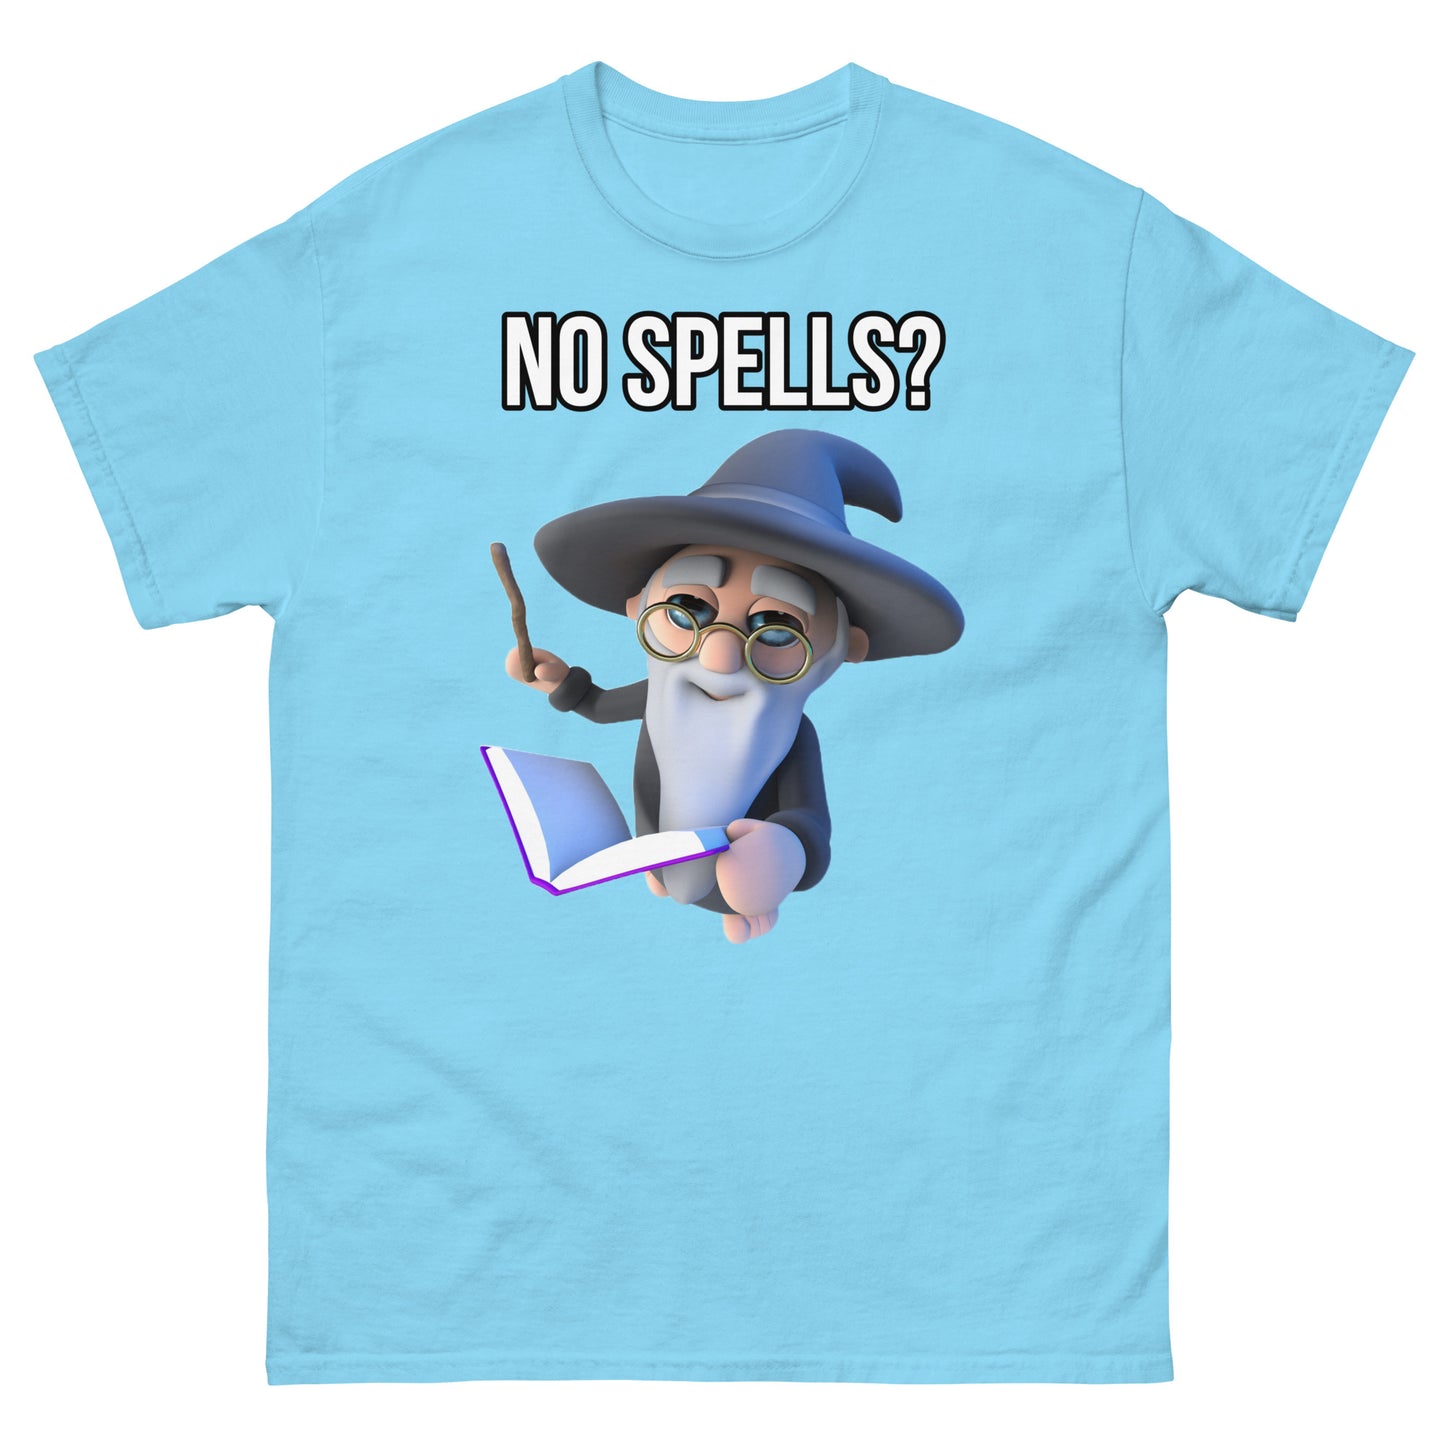 No spells?